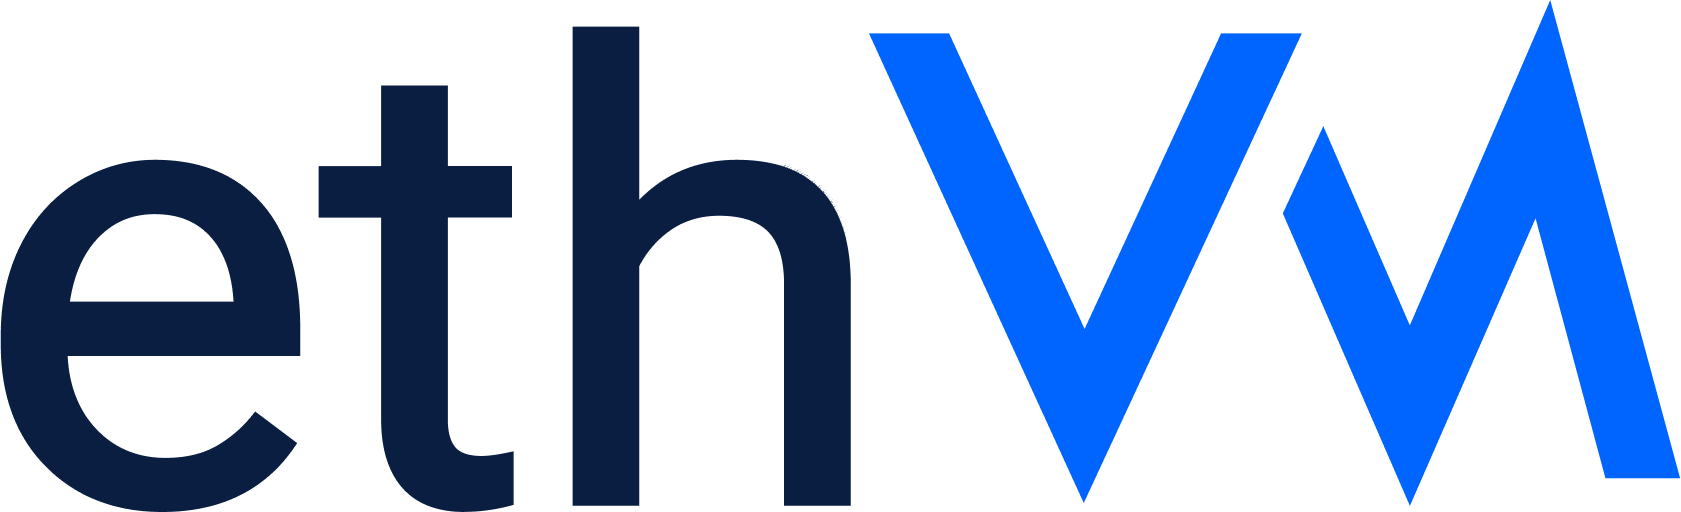 ethvm-logo